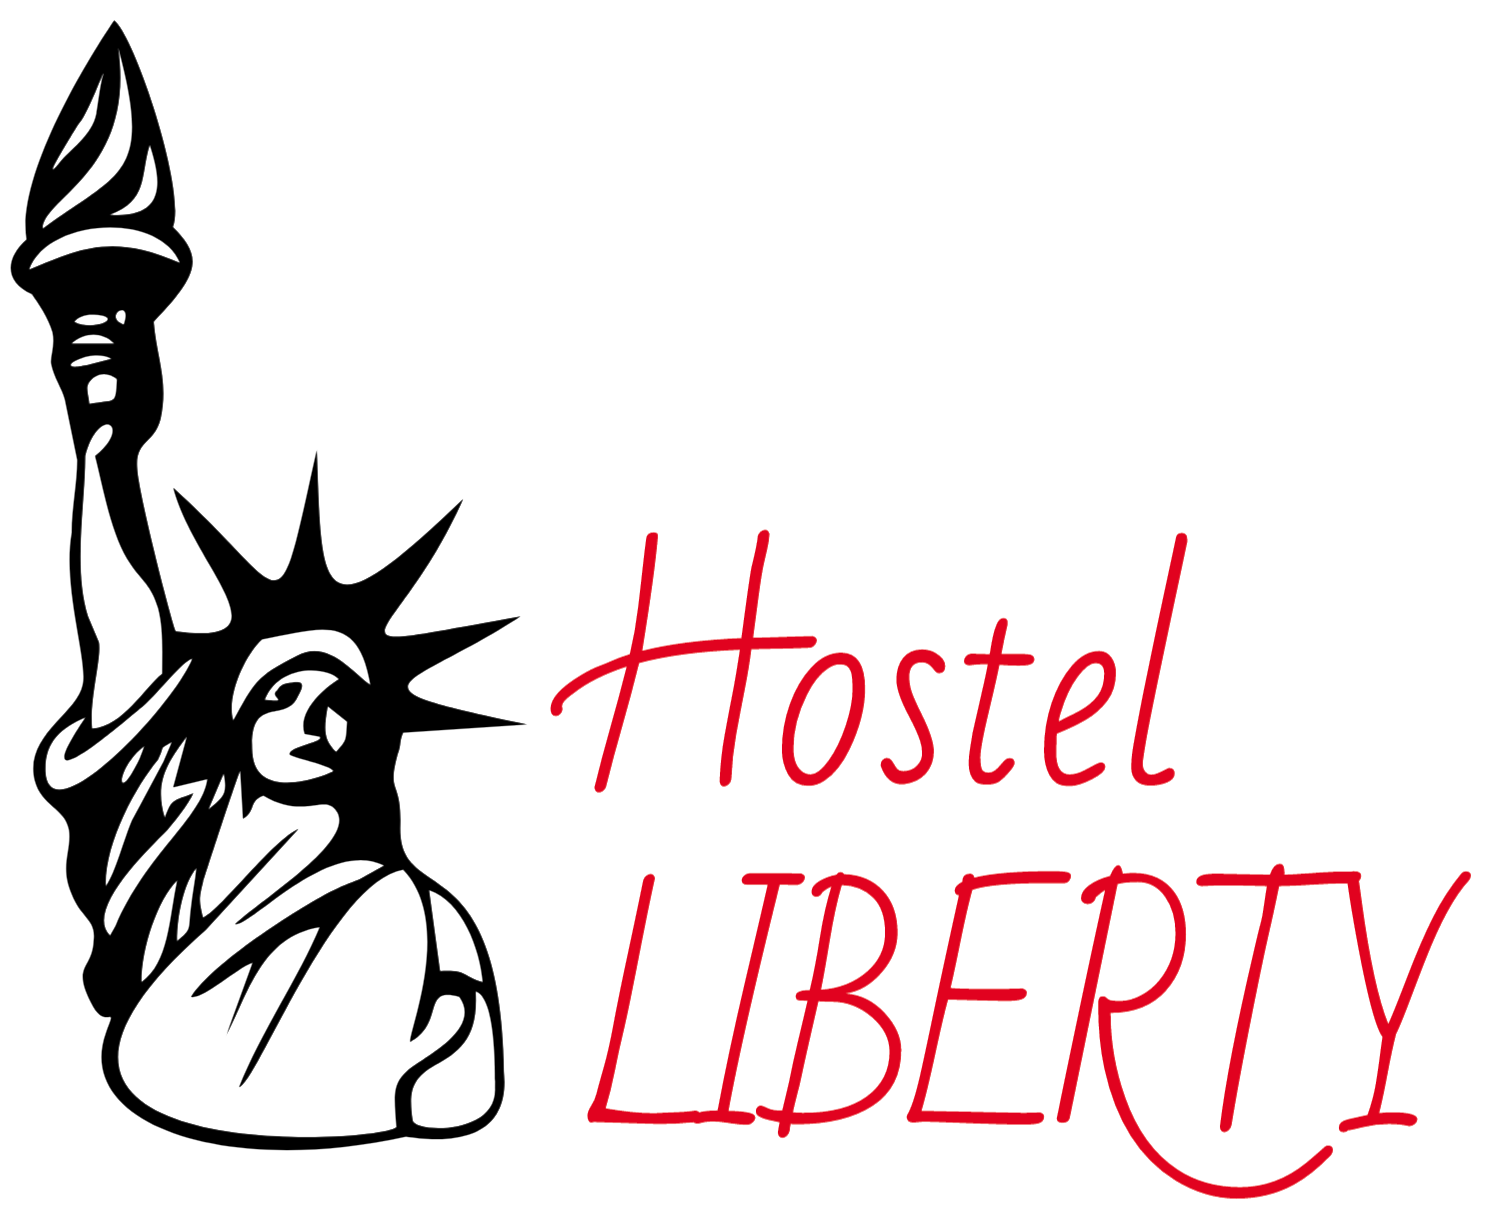 Hostel Liberty